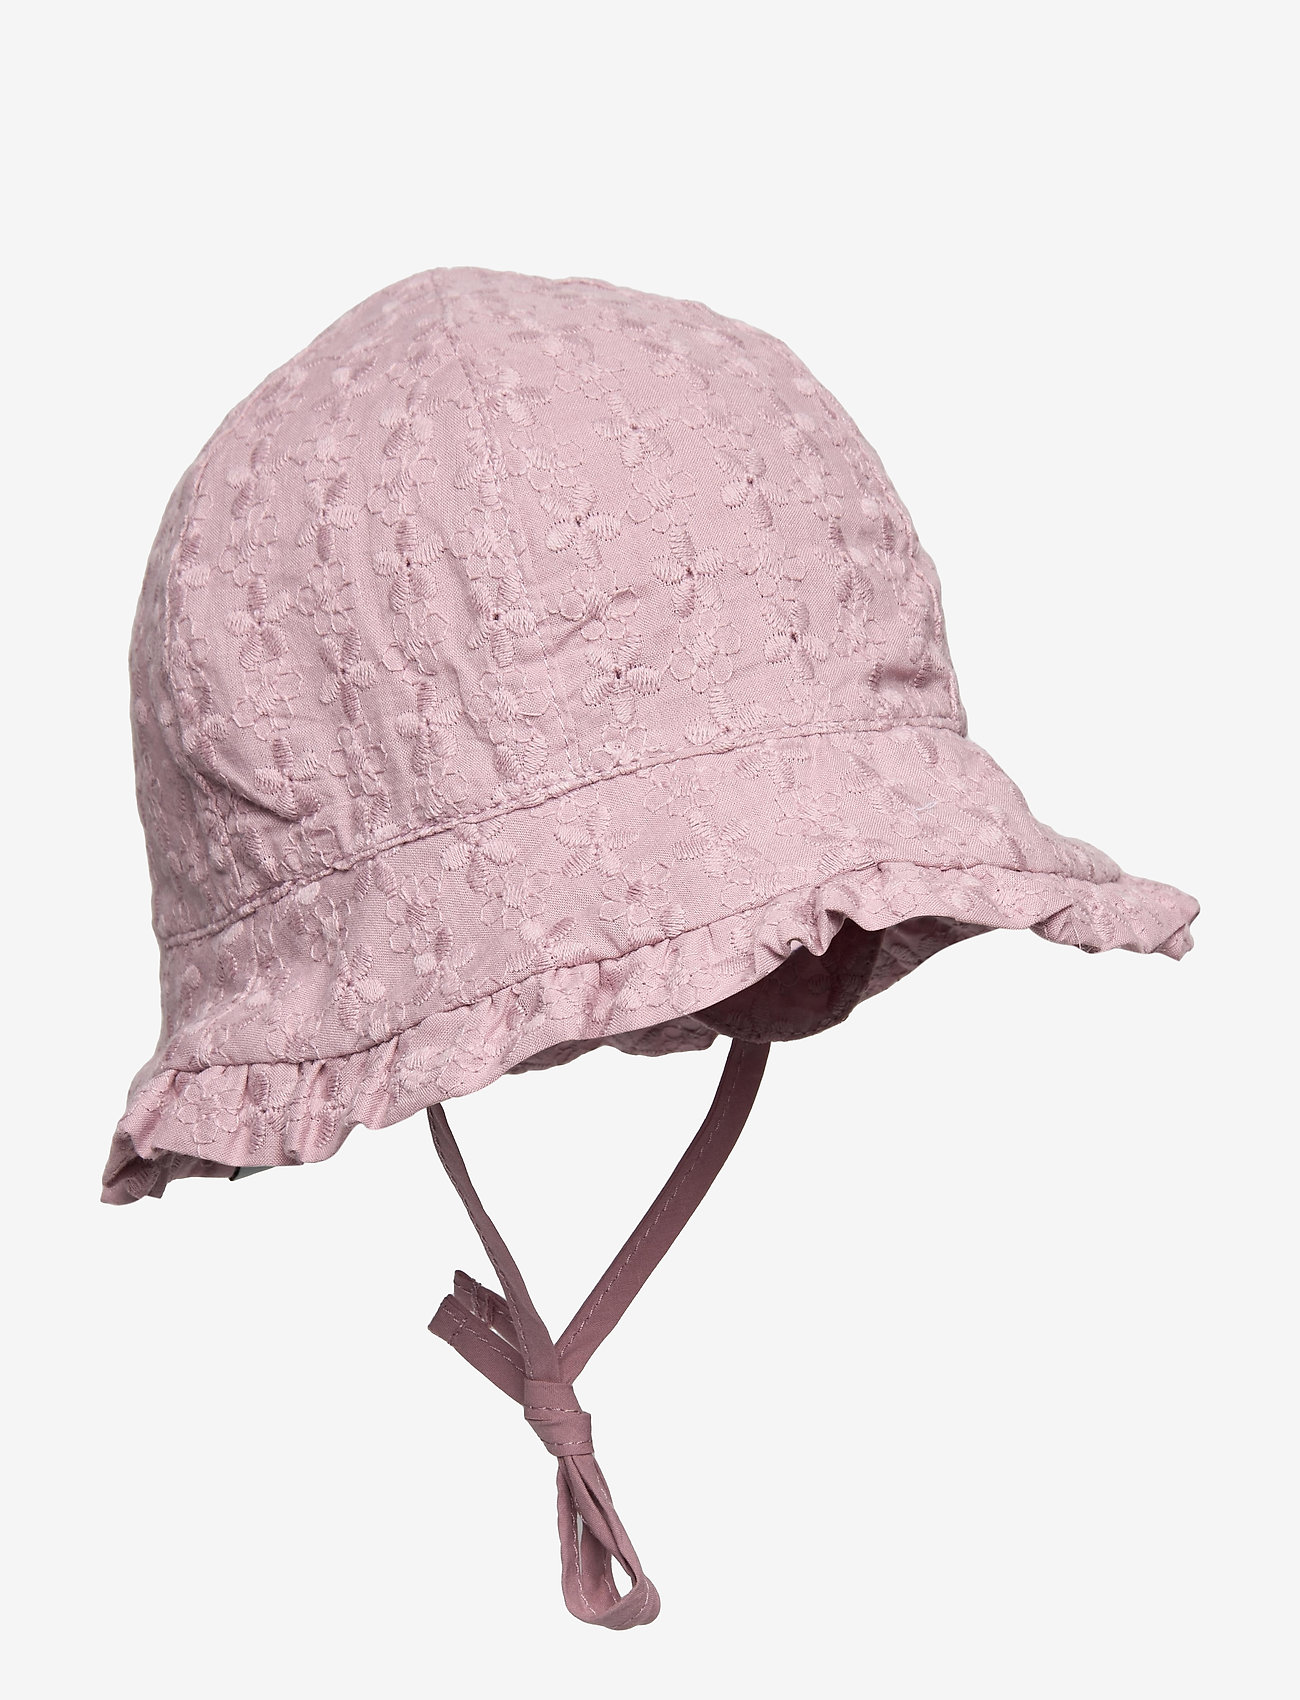 mp Denmark - Flora Bell Hat - gode sommertilbud - rose - 0